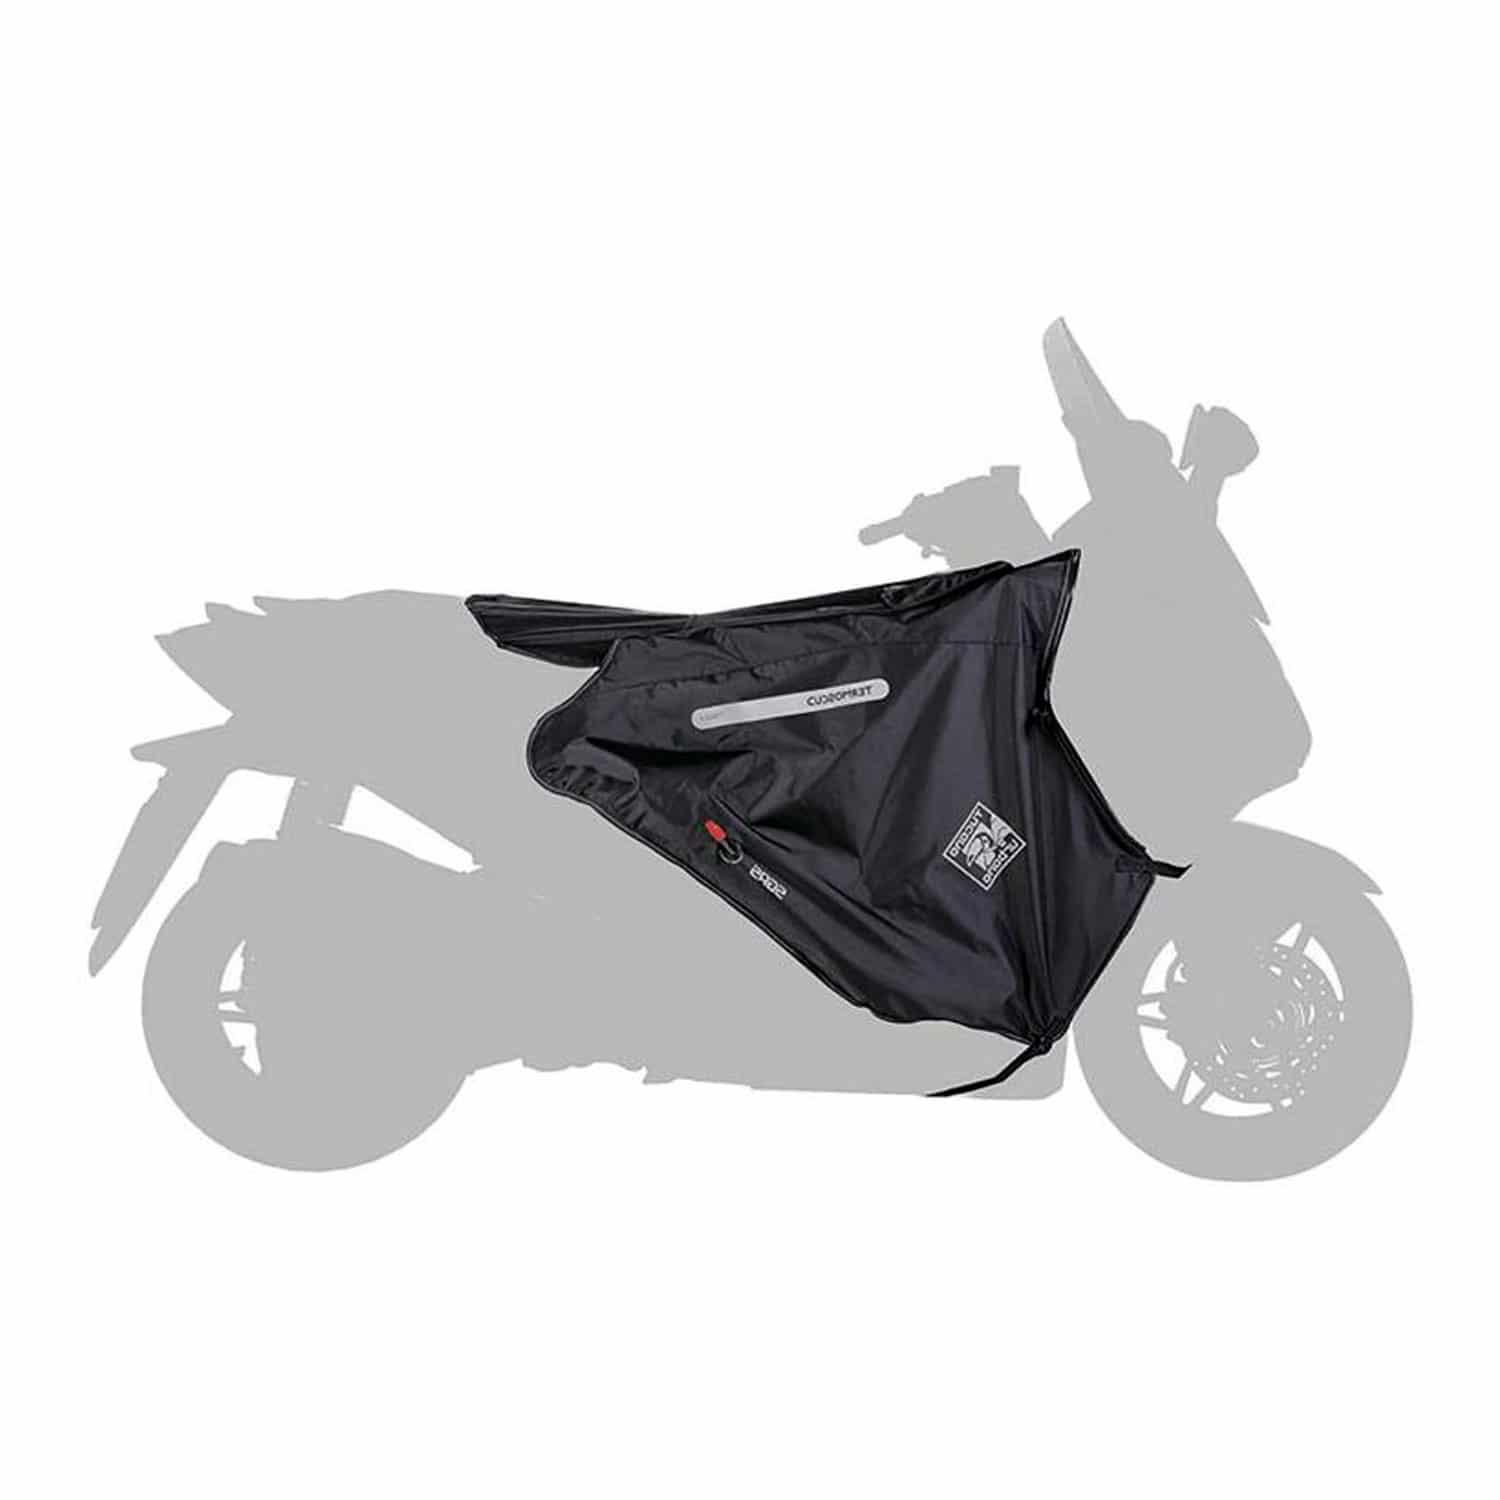 Manchons neoprene scooter moto Tucano Urbano R363X